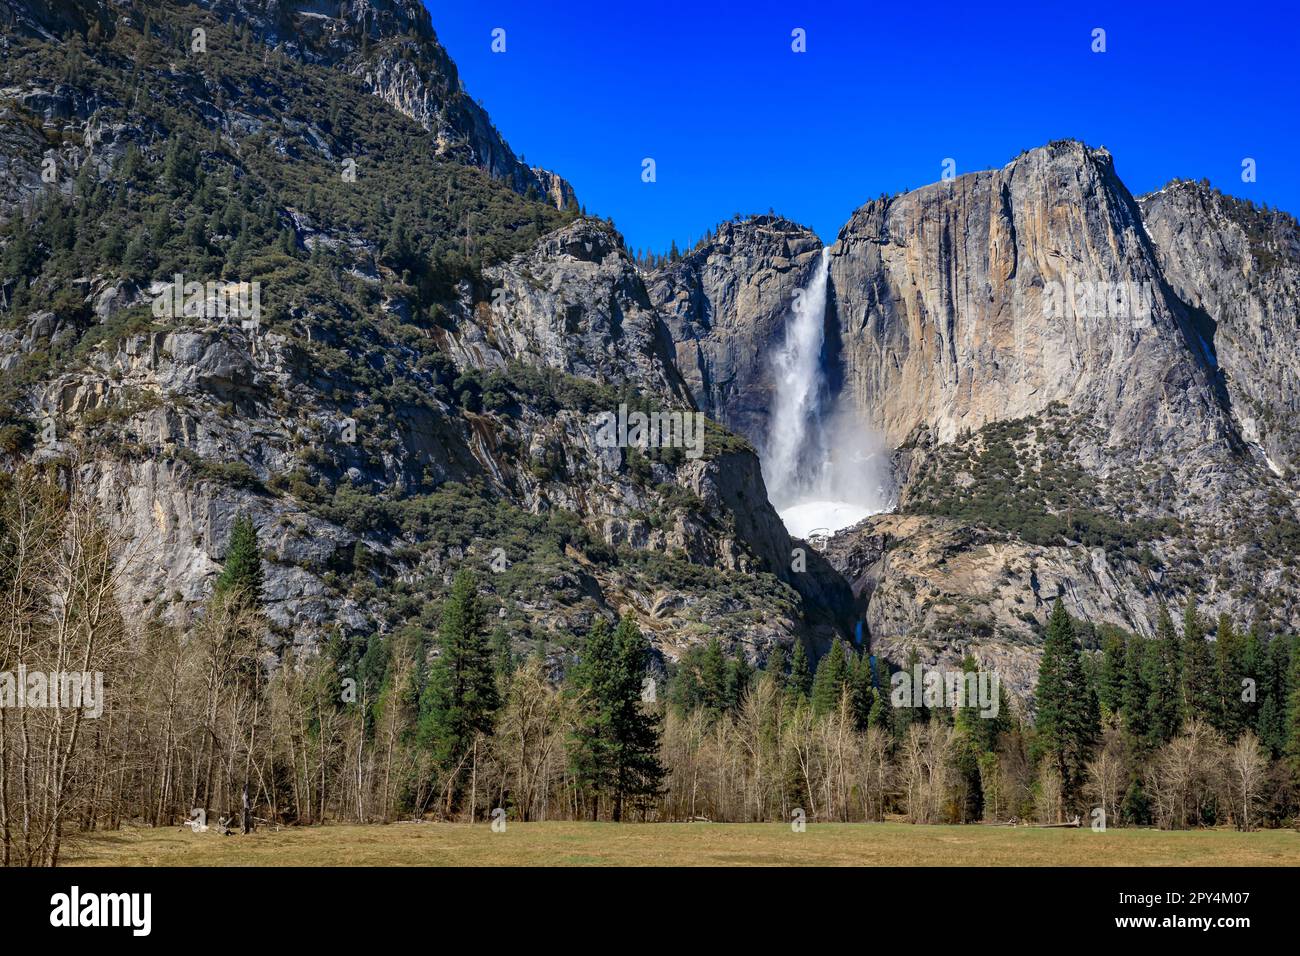 Vista panoramica delle cascate di Yosemite con il cono di neve congelato in primavera nel Parco Nazionale di Yosemite, catena montuosa della Sierra Nevada in California, Stati Uniti Foto Stock